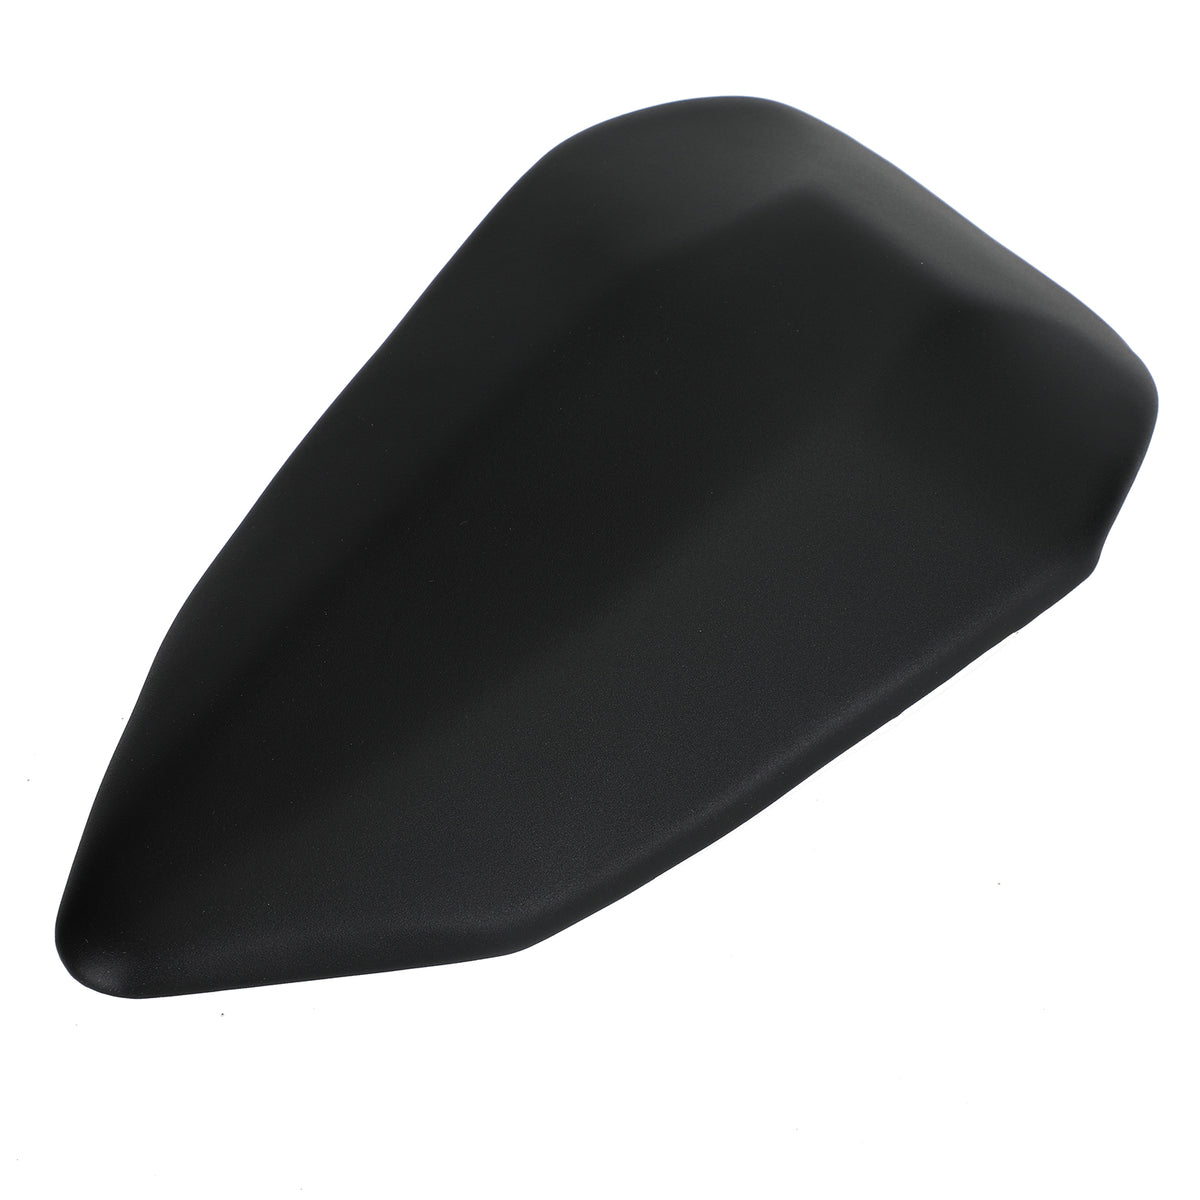 Schwarzes Kissen für den hinteren Beifahrersitz, passend für Ducati 899 2012–2014 und 1199 2012–2014